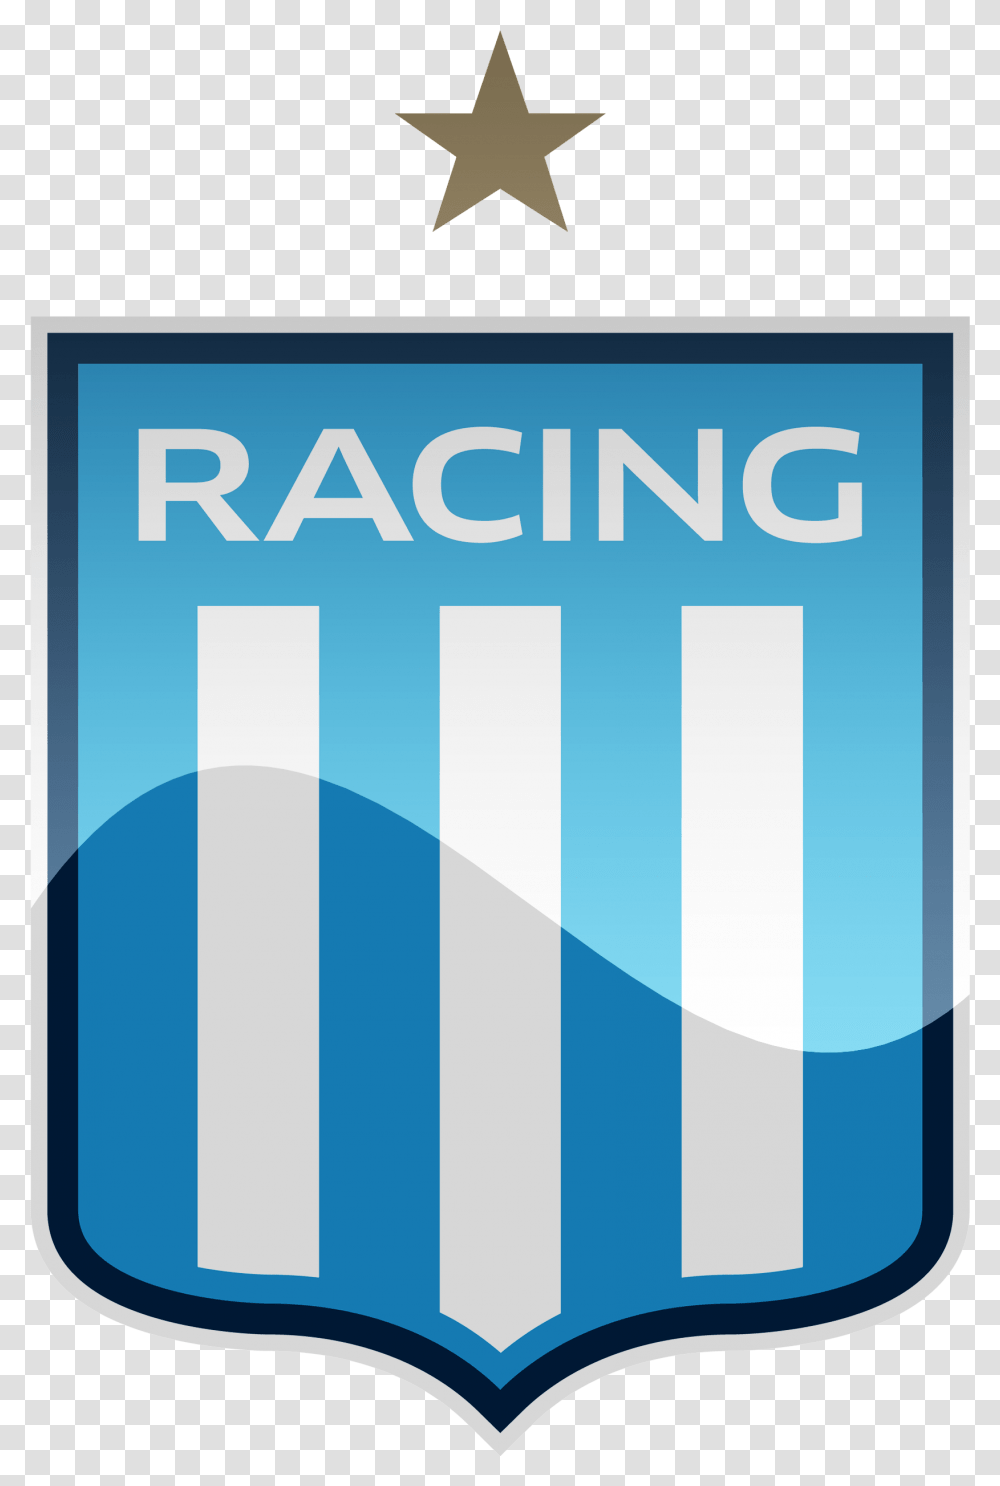 Racing Club Hd Logo Racing Club De Avellaneda, Label, Poster, Advertisement Transparent Png